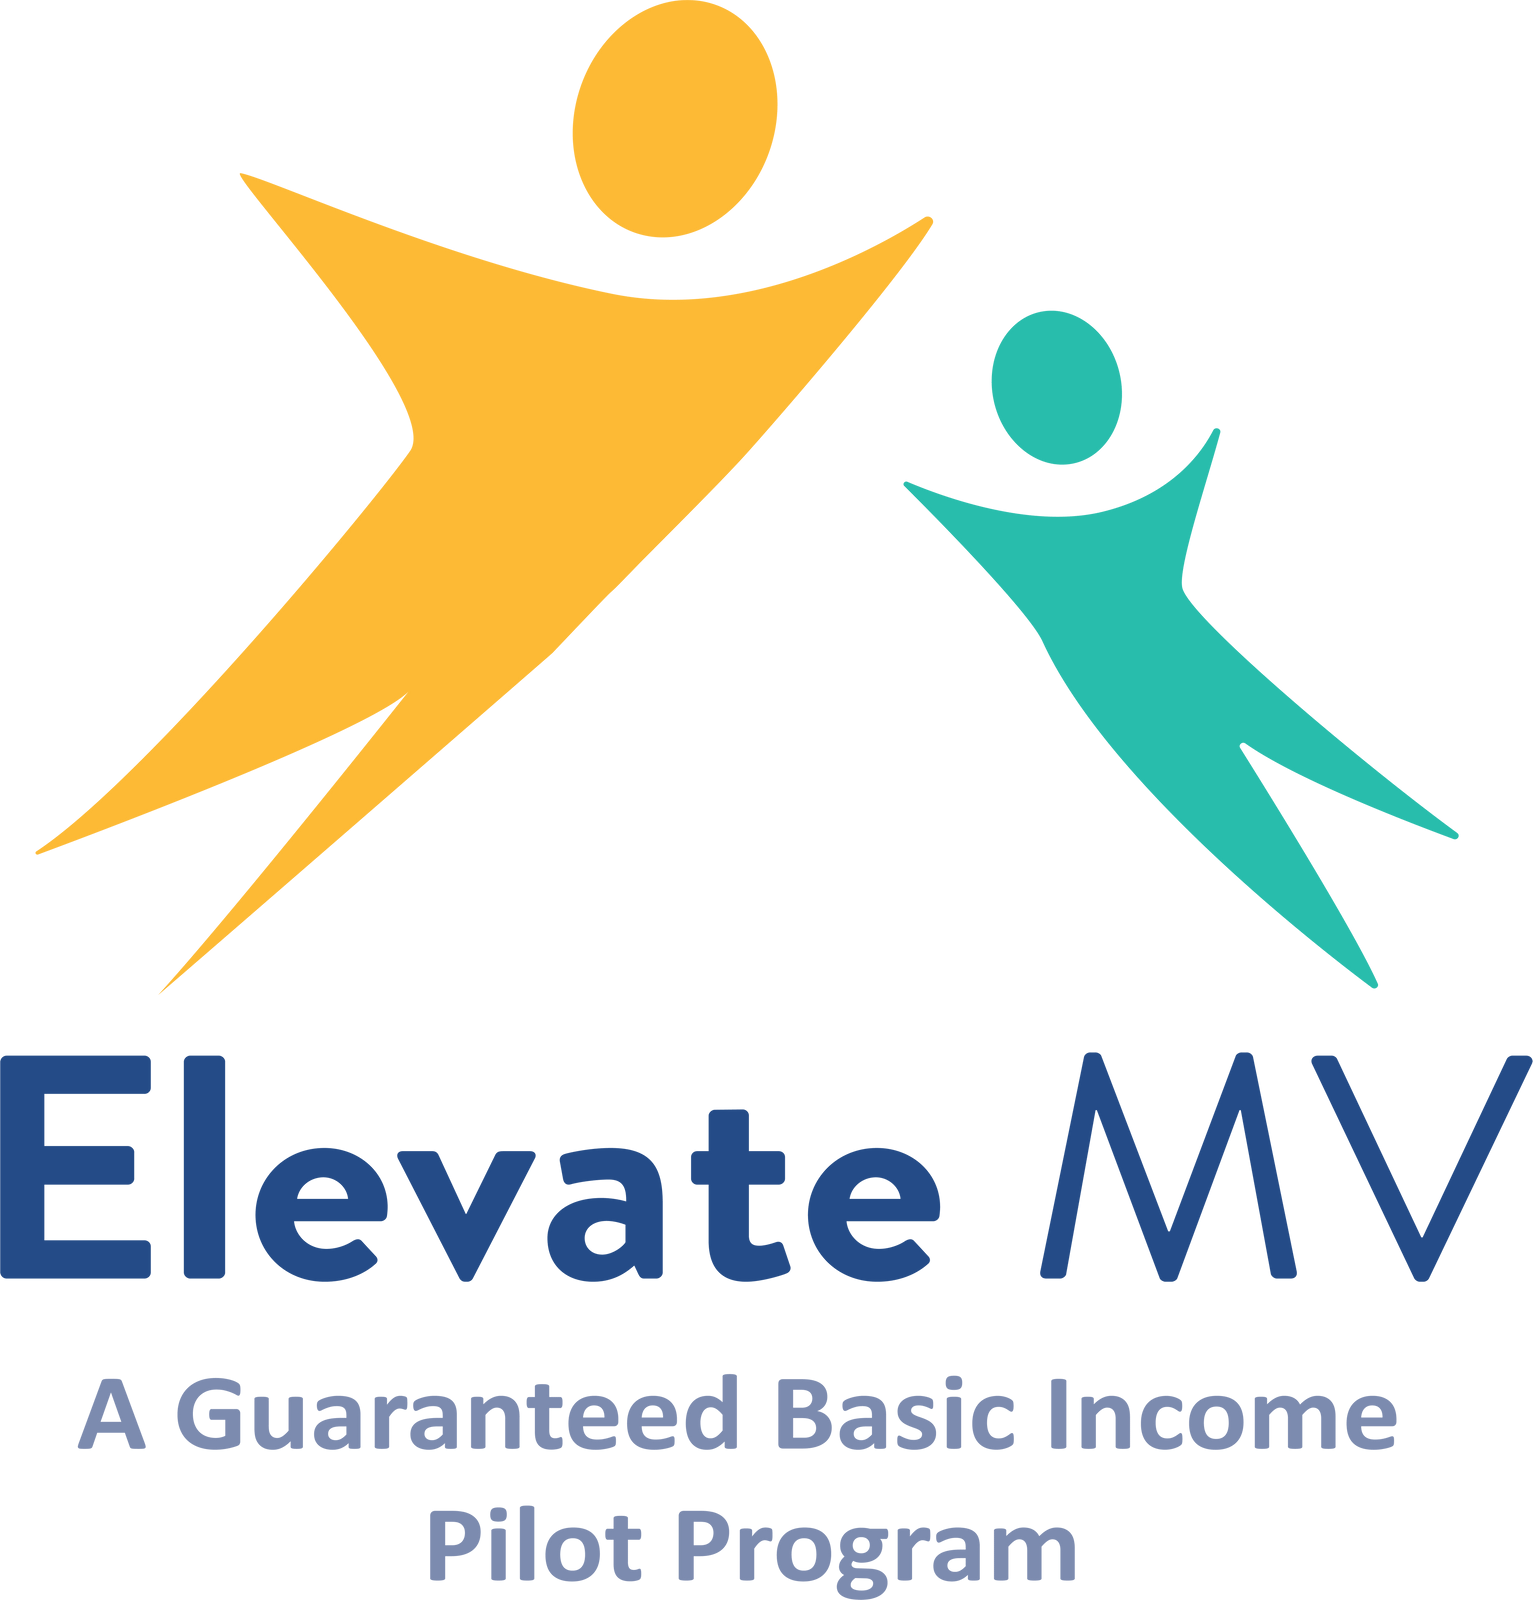 ElevateMV-logo for poster board (30x40in)